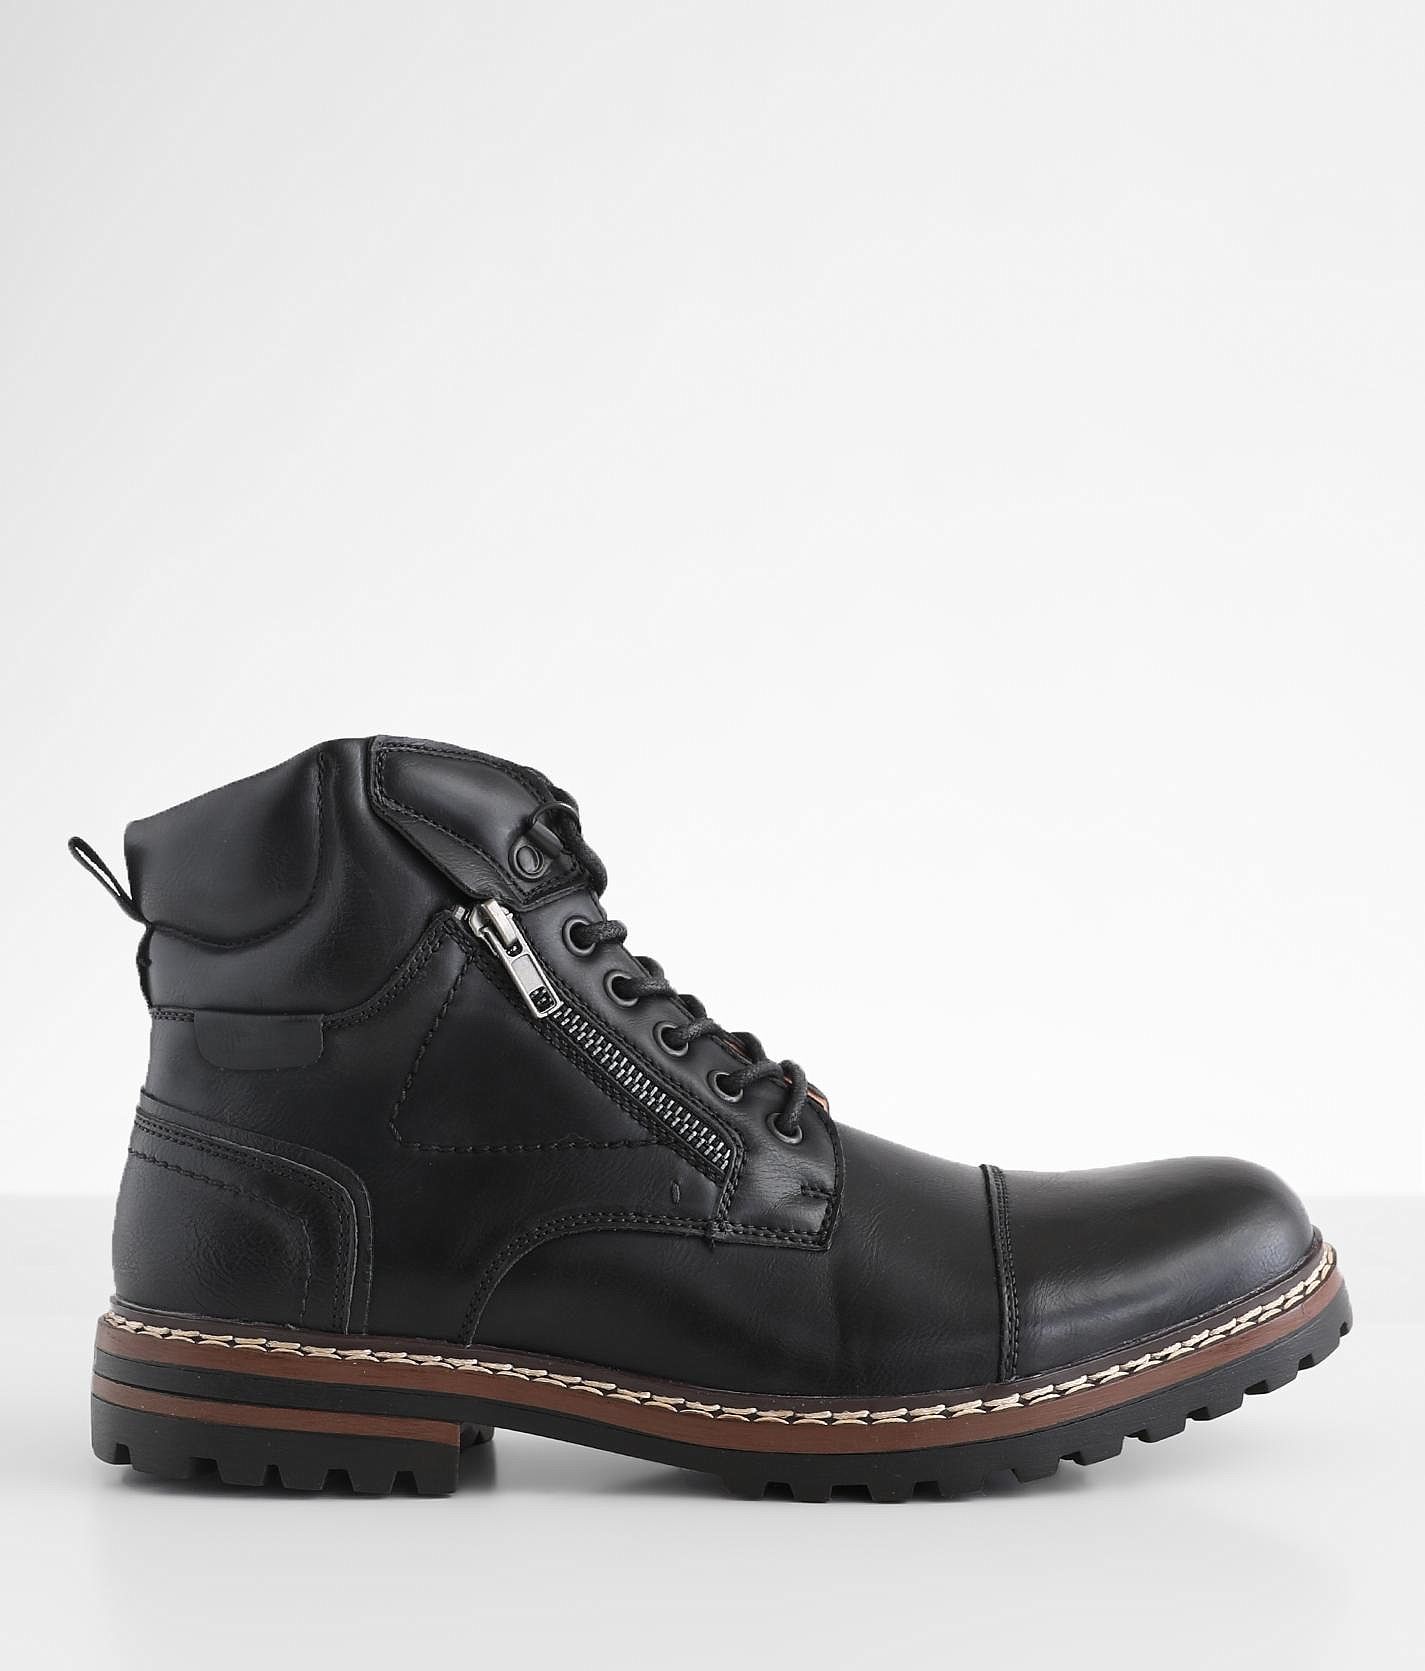 Steve Madden Sandar Boot - Men's Shoes in Black | Buckle